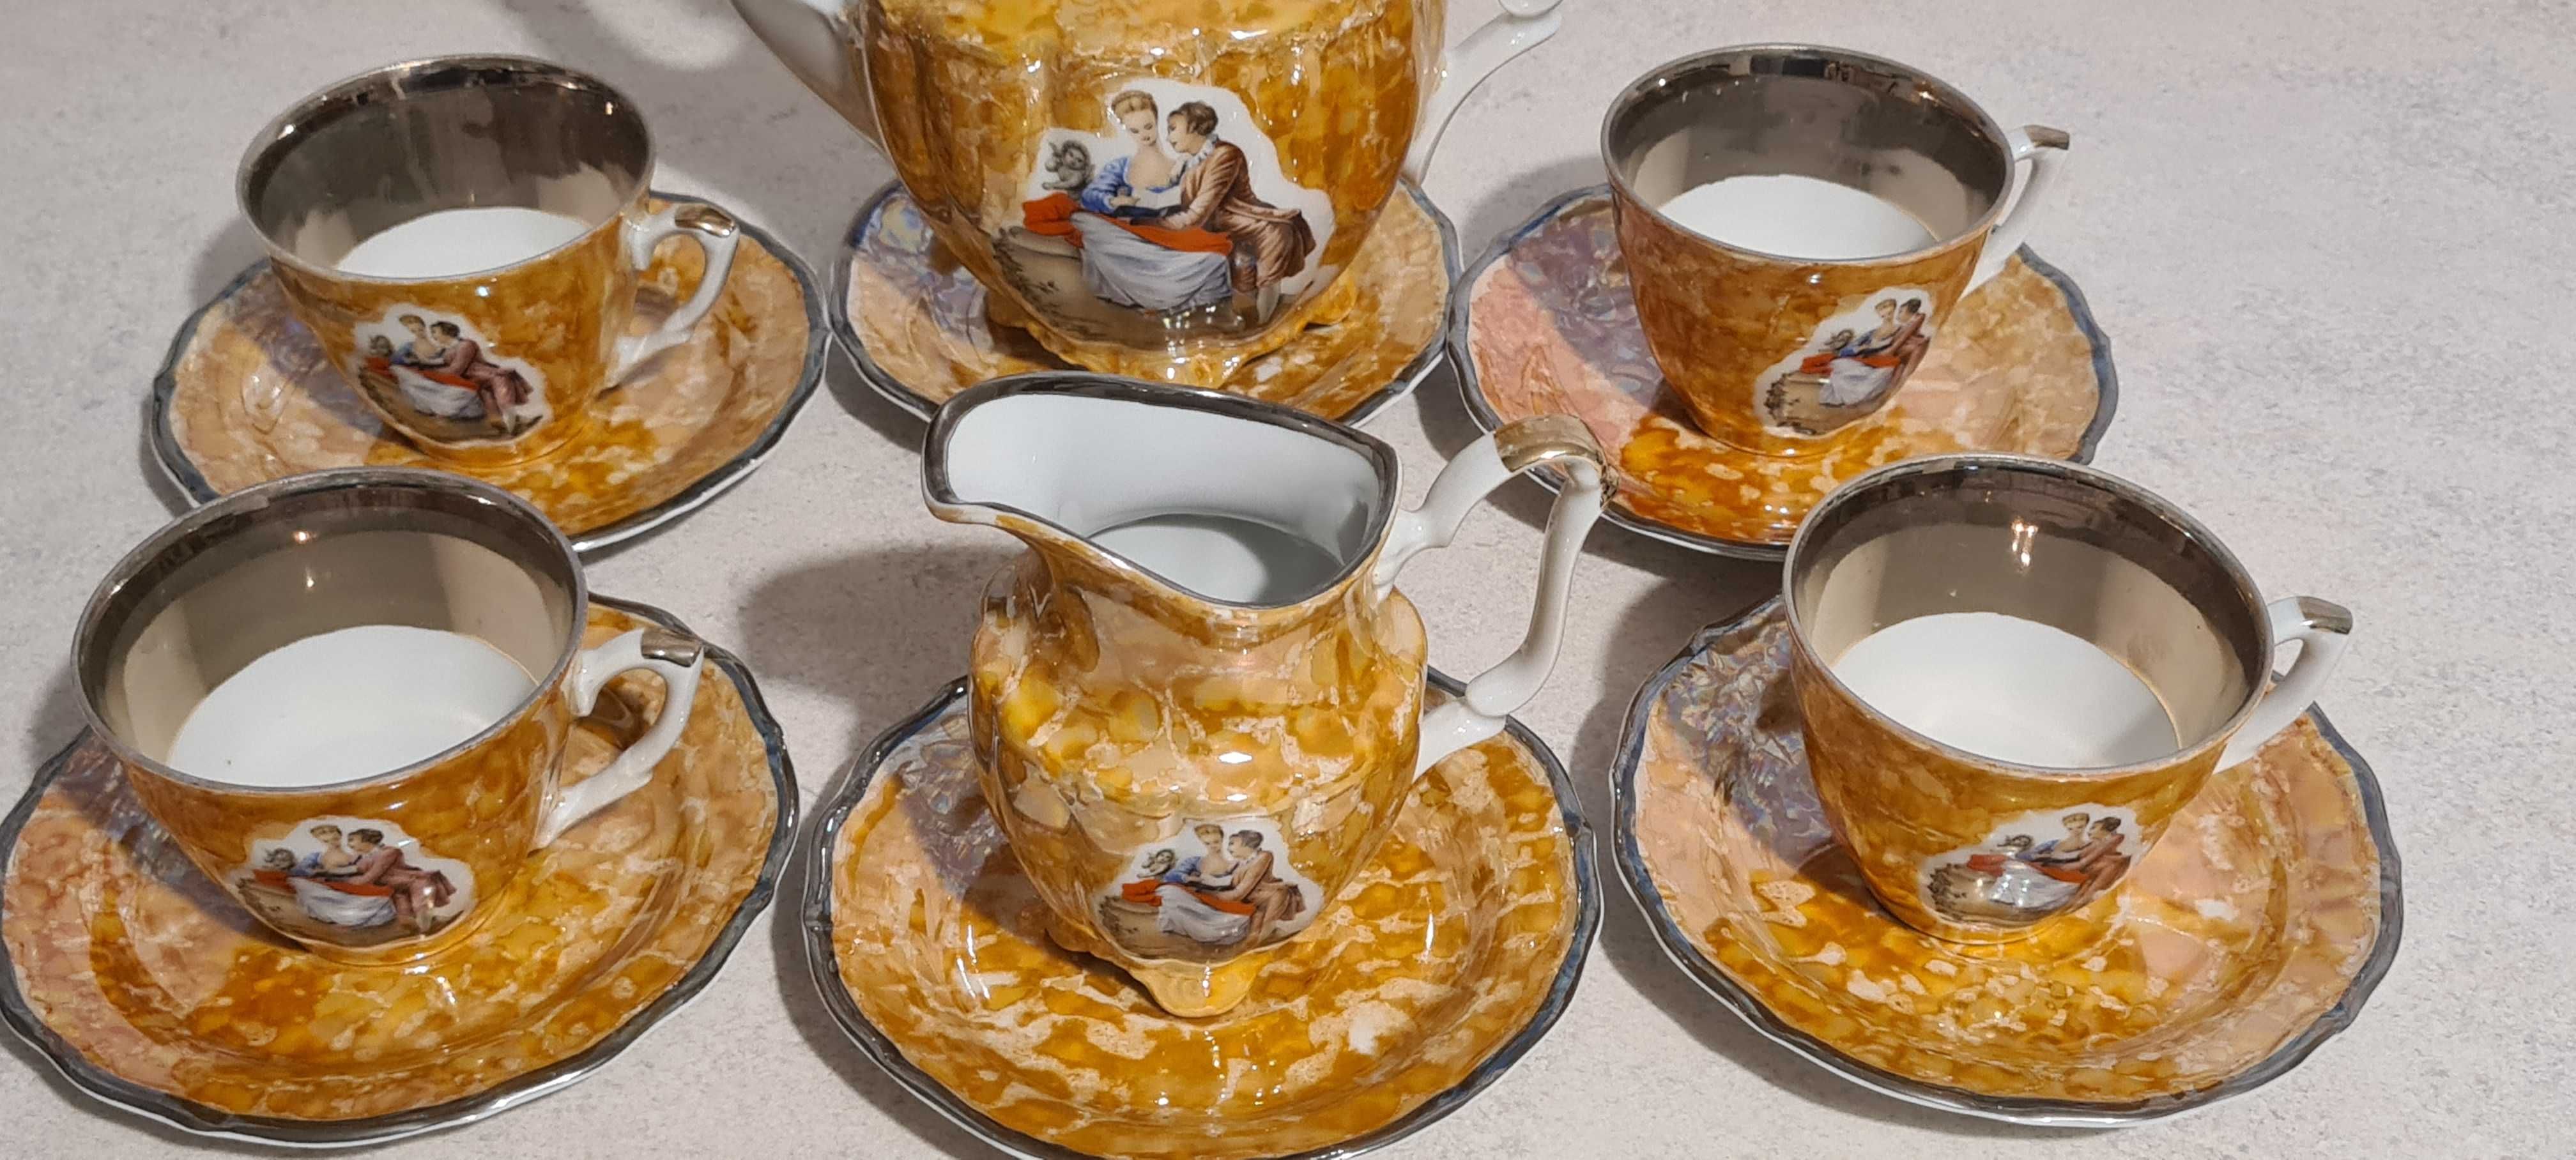 Serwis kawowy - porcelana Wałbrzych PRL, lata 70-80